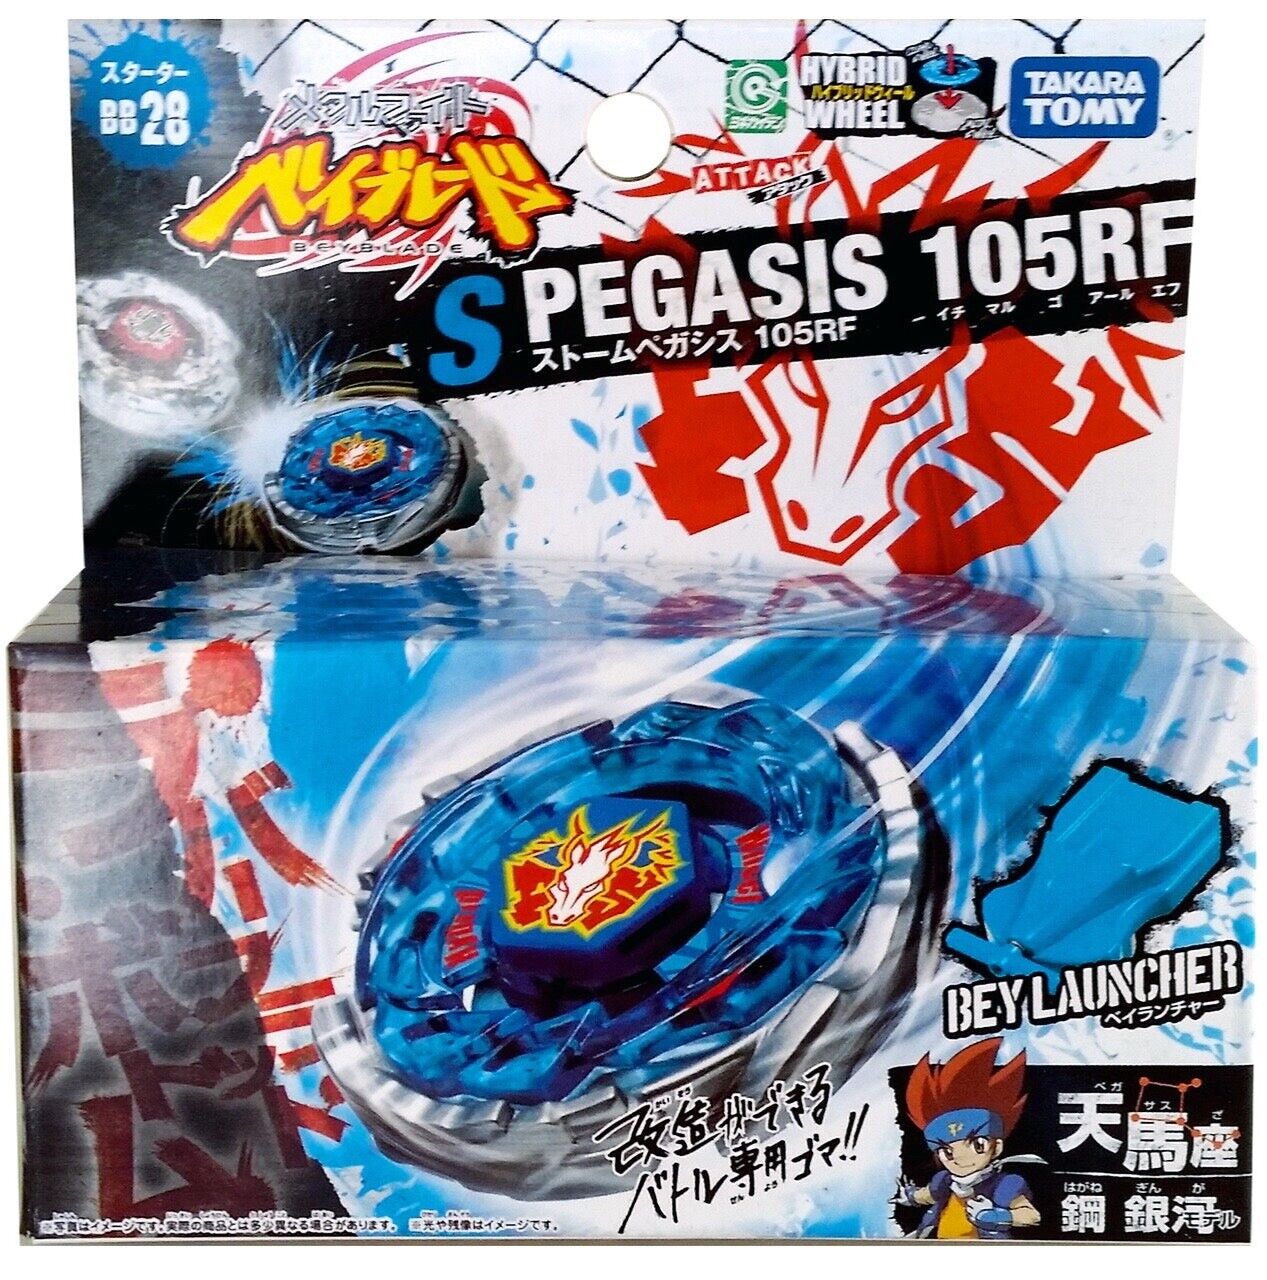 Takara Tomy Storm Pegasis / Pegasus Metal Masters Beyblade BB-28